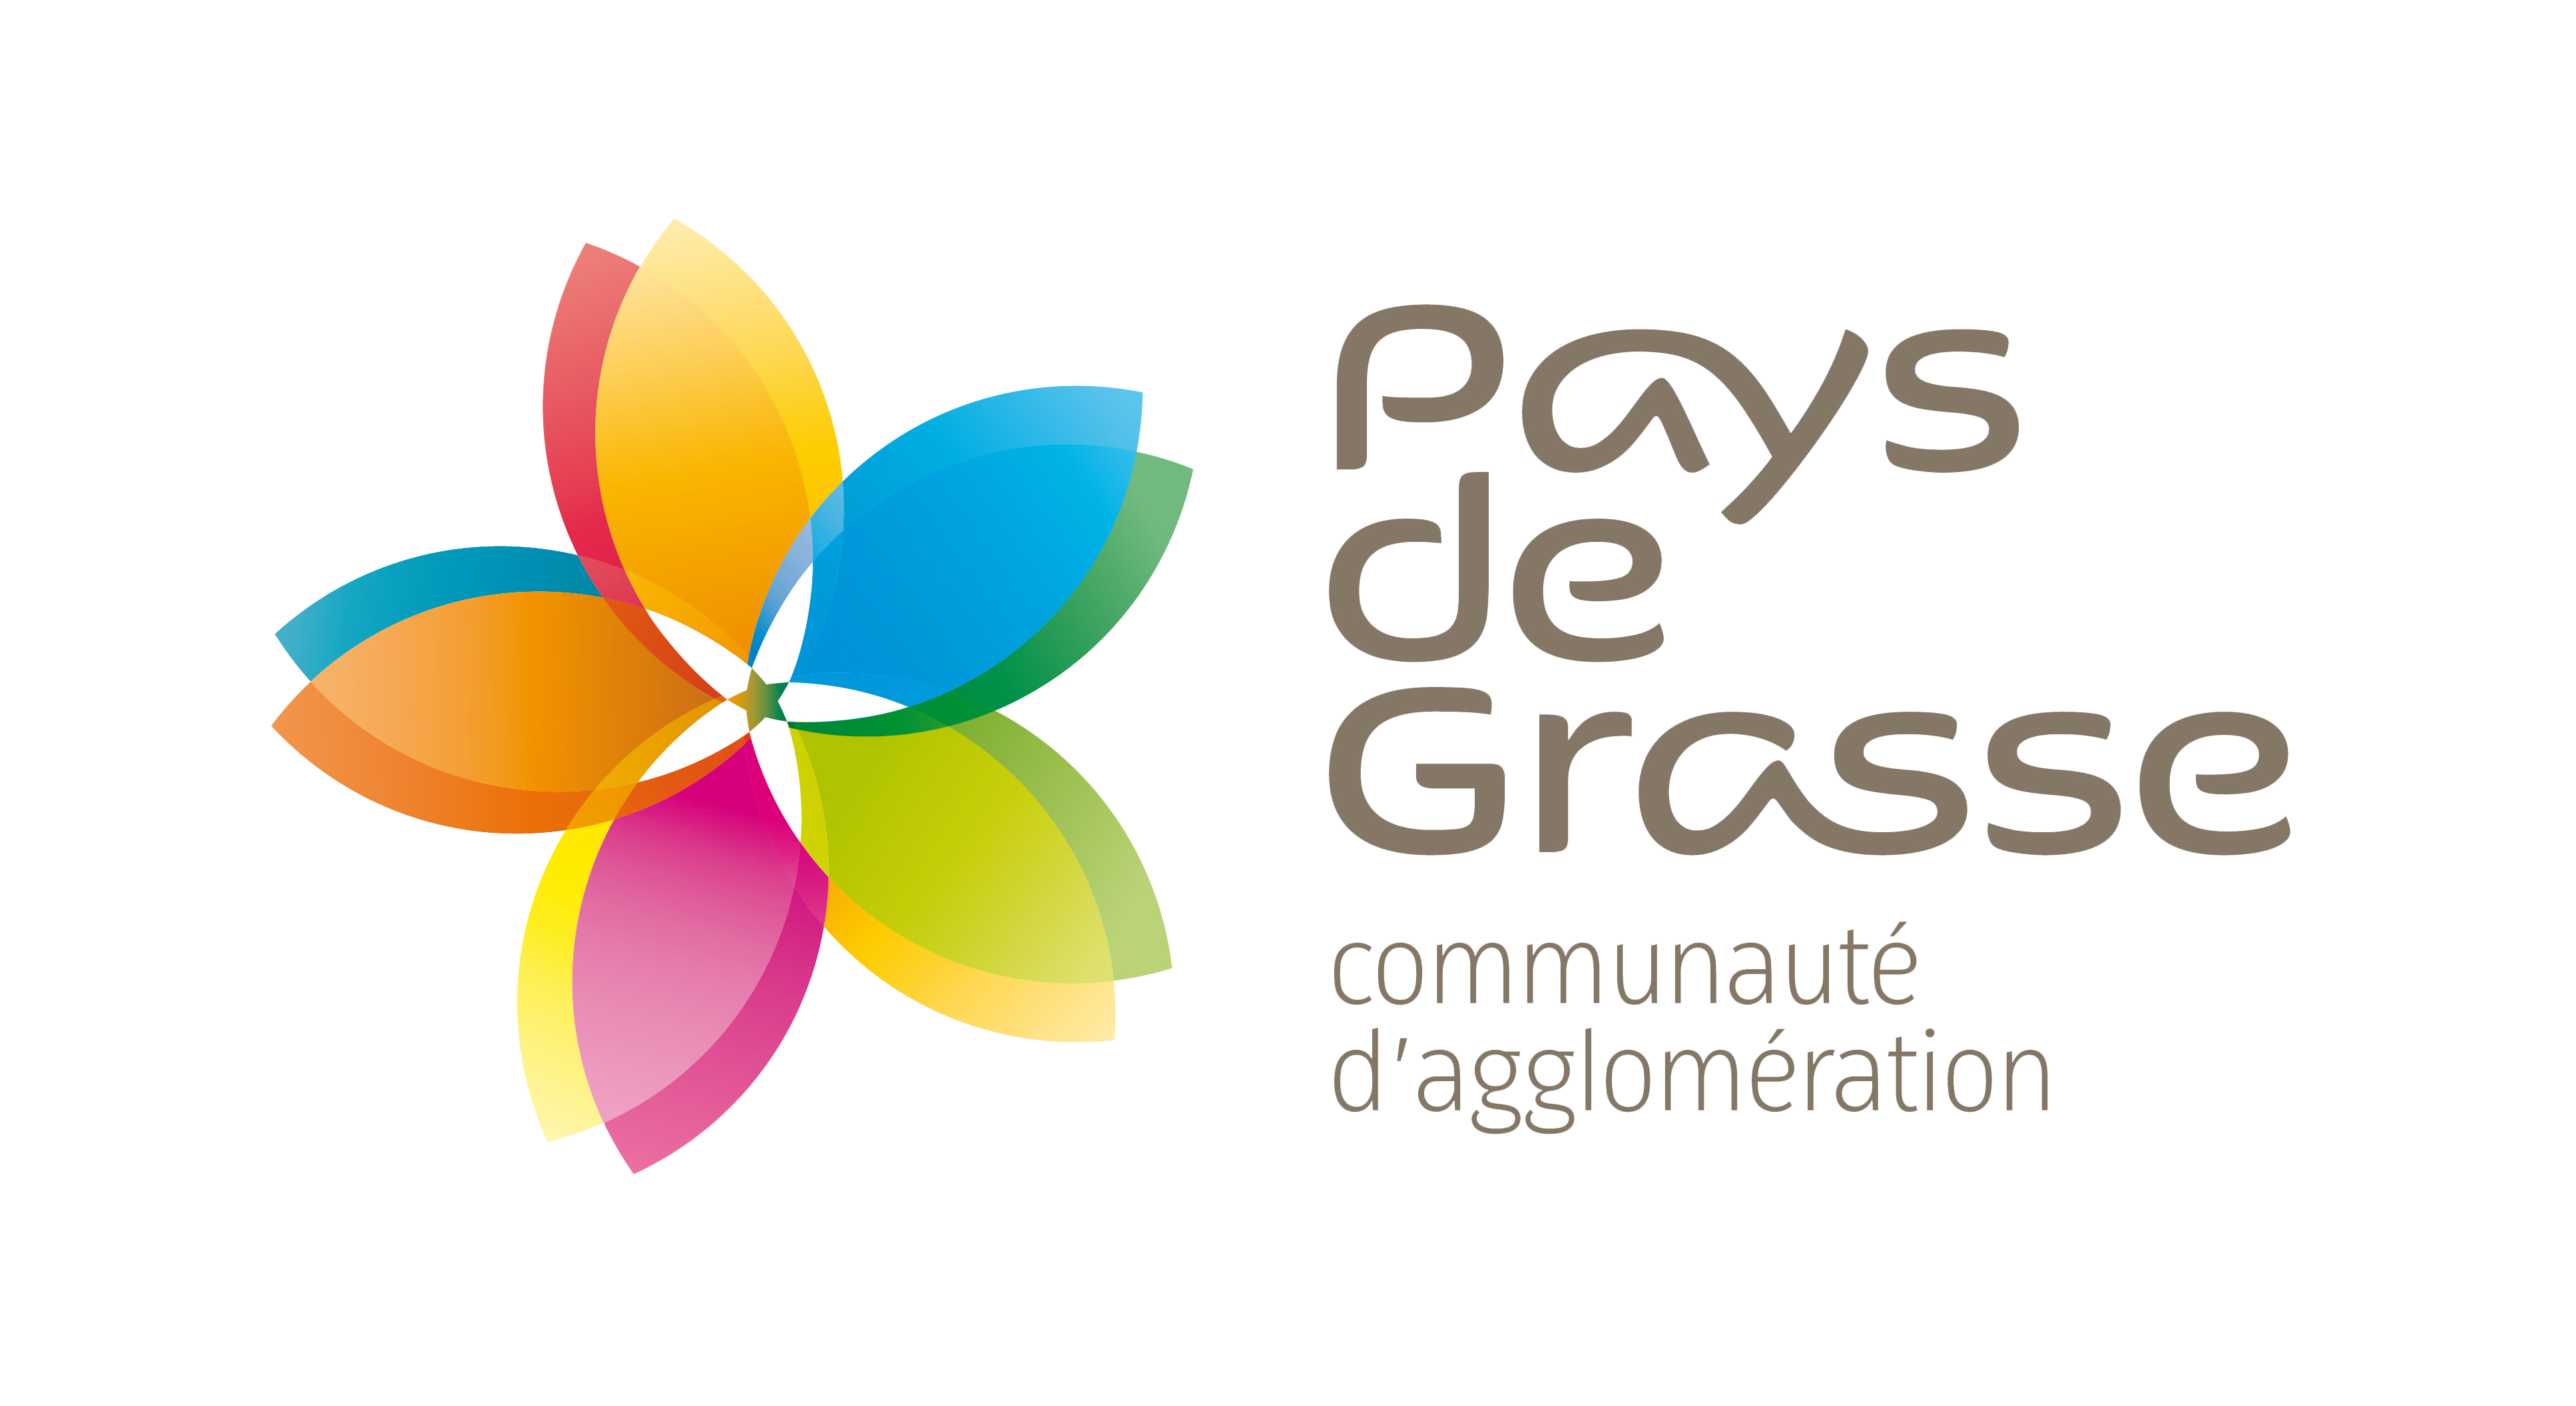 PDG_Logo pays de grasse 2014